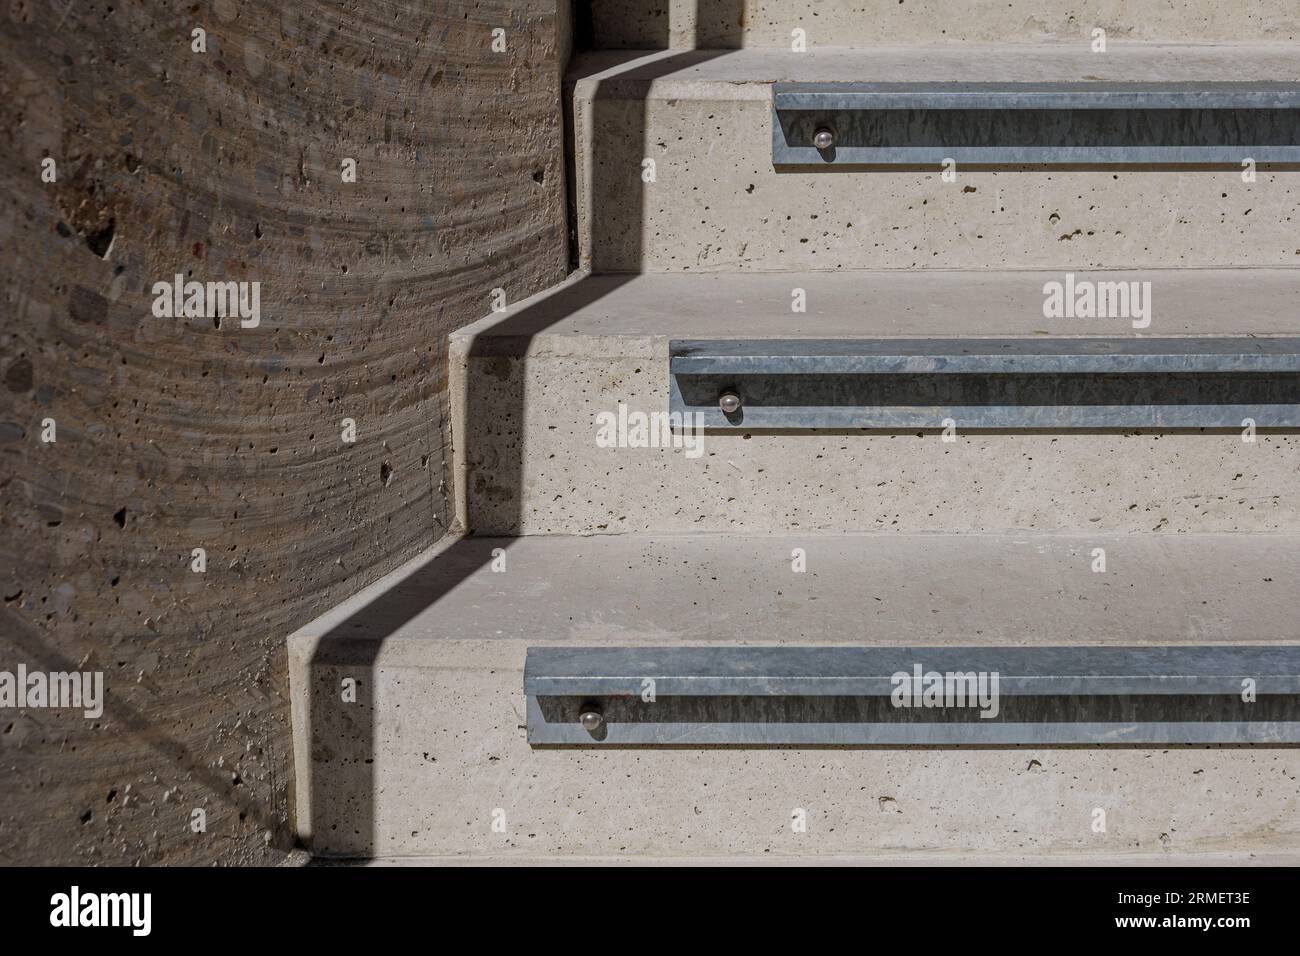 Selektives Fokusdetail der Aluminiumprofil-Treppenschnalle für rutschfeste Verlängerung von rauer Betontreppe im Freien. Stockfoto